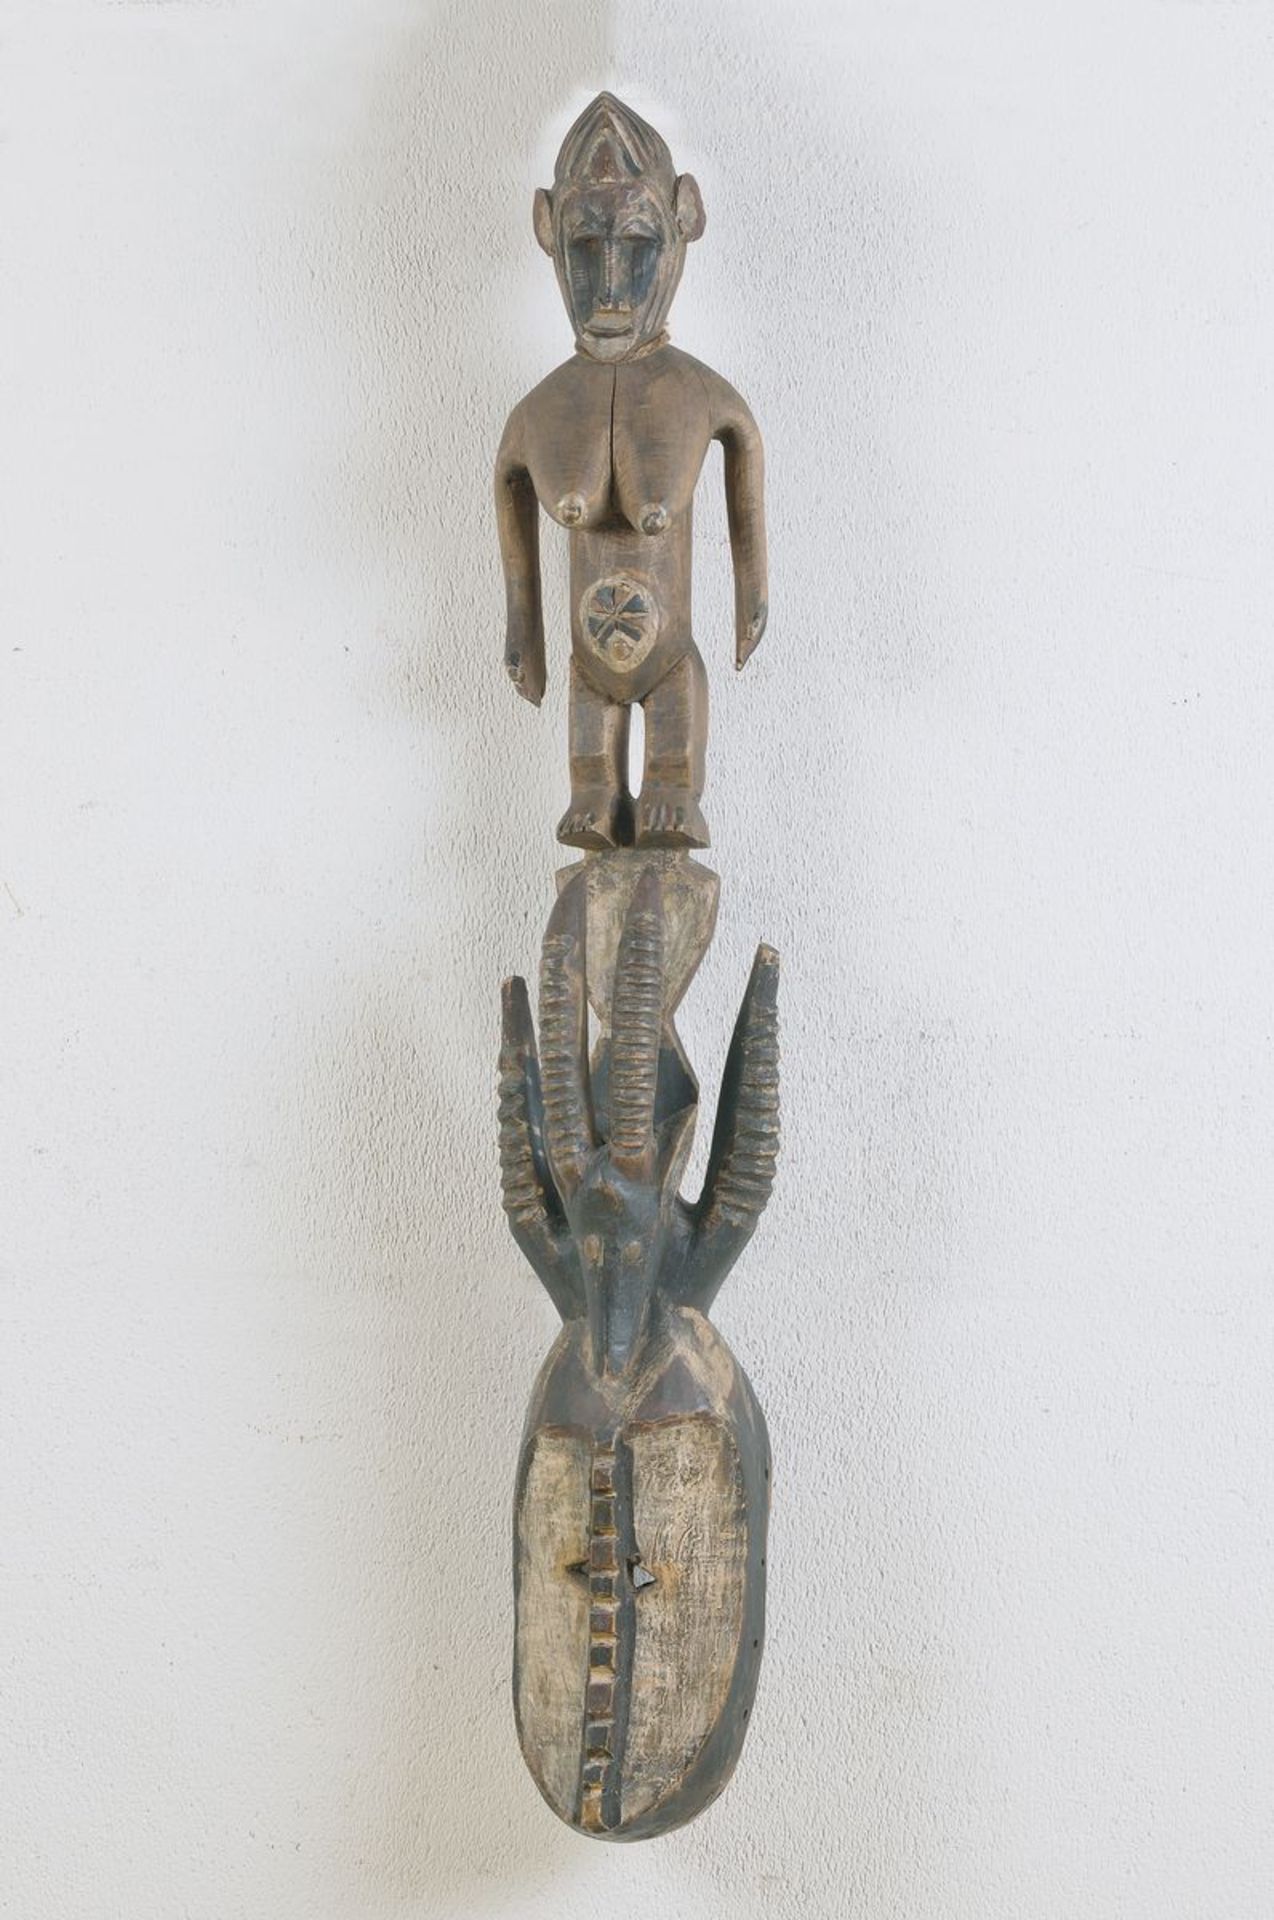 Antilopenaufsatz Tjiwara, um 1900, weibl. Figur, Bamana, Mali, Stamm ungedeutet, im Kult, Maske